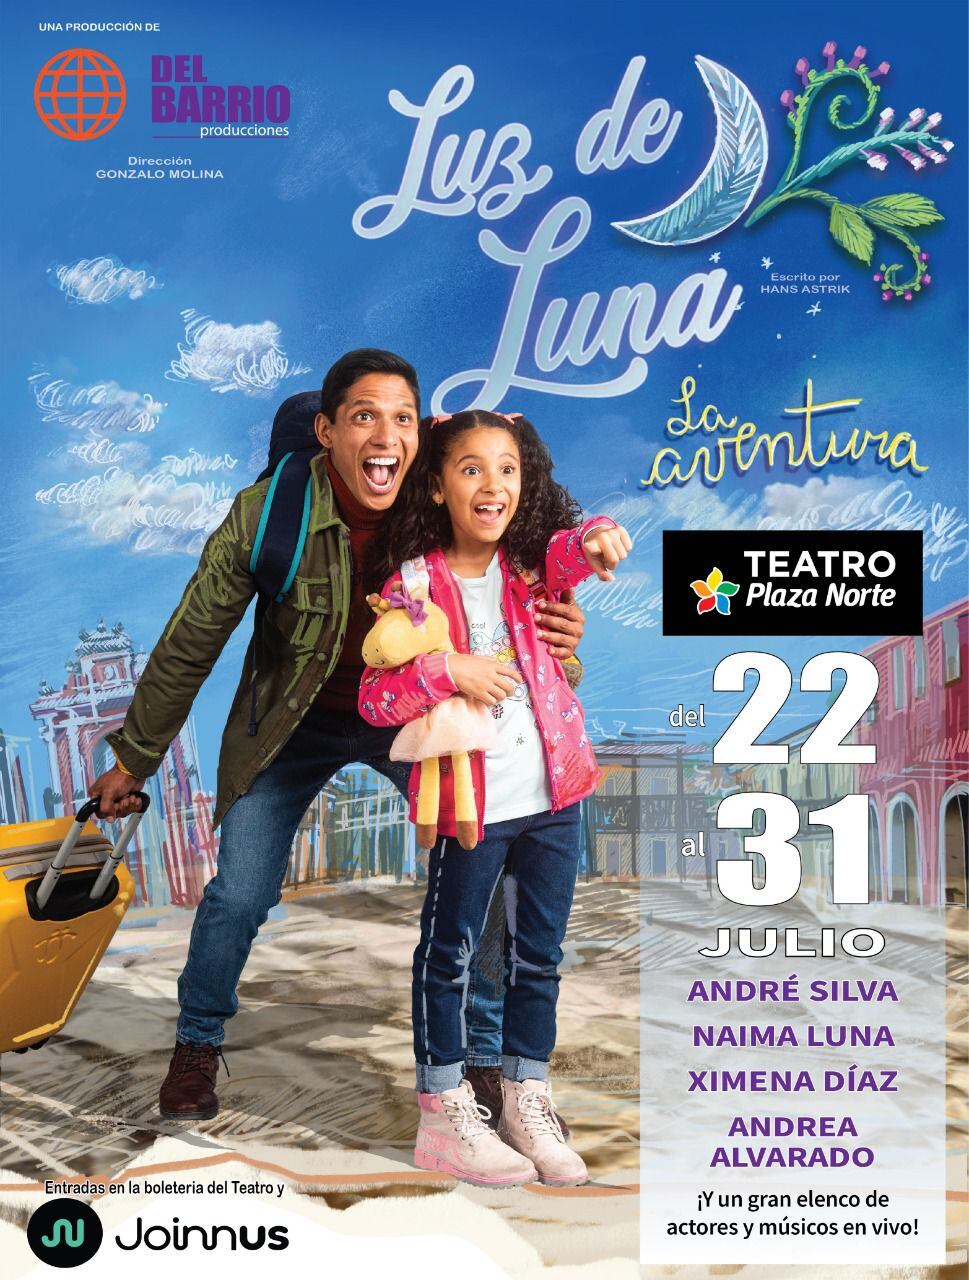 La obra "Luz de Luna: La Aventura" se llevará a cabo en el Teatro Plaza Norte desde el 22 de julio. (Foto: Joinnus)